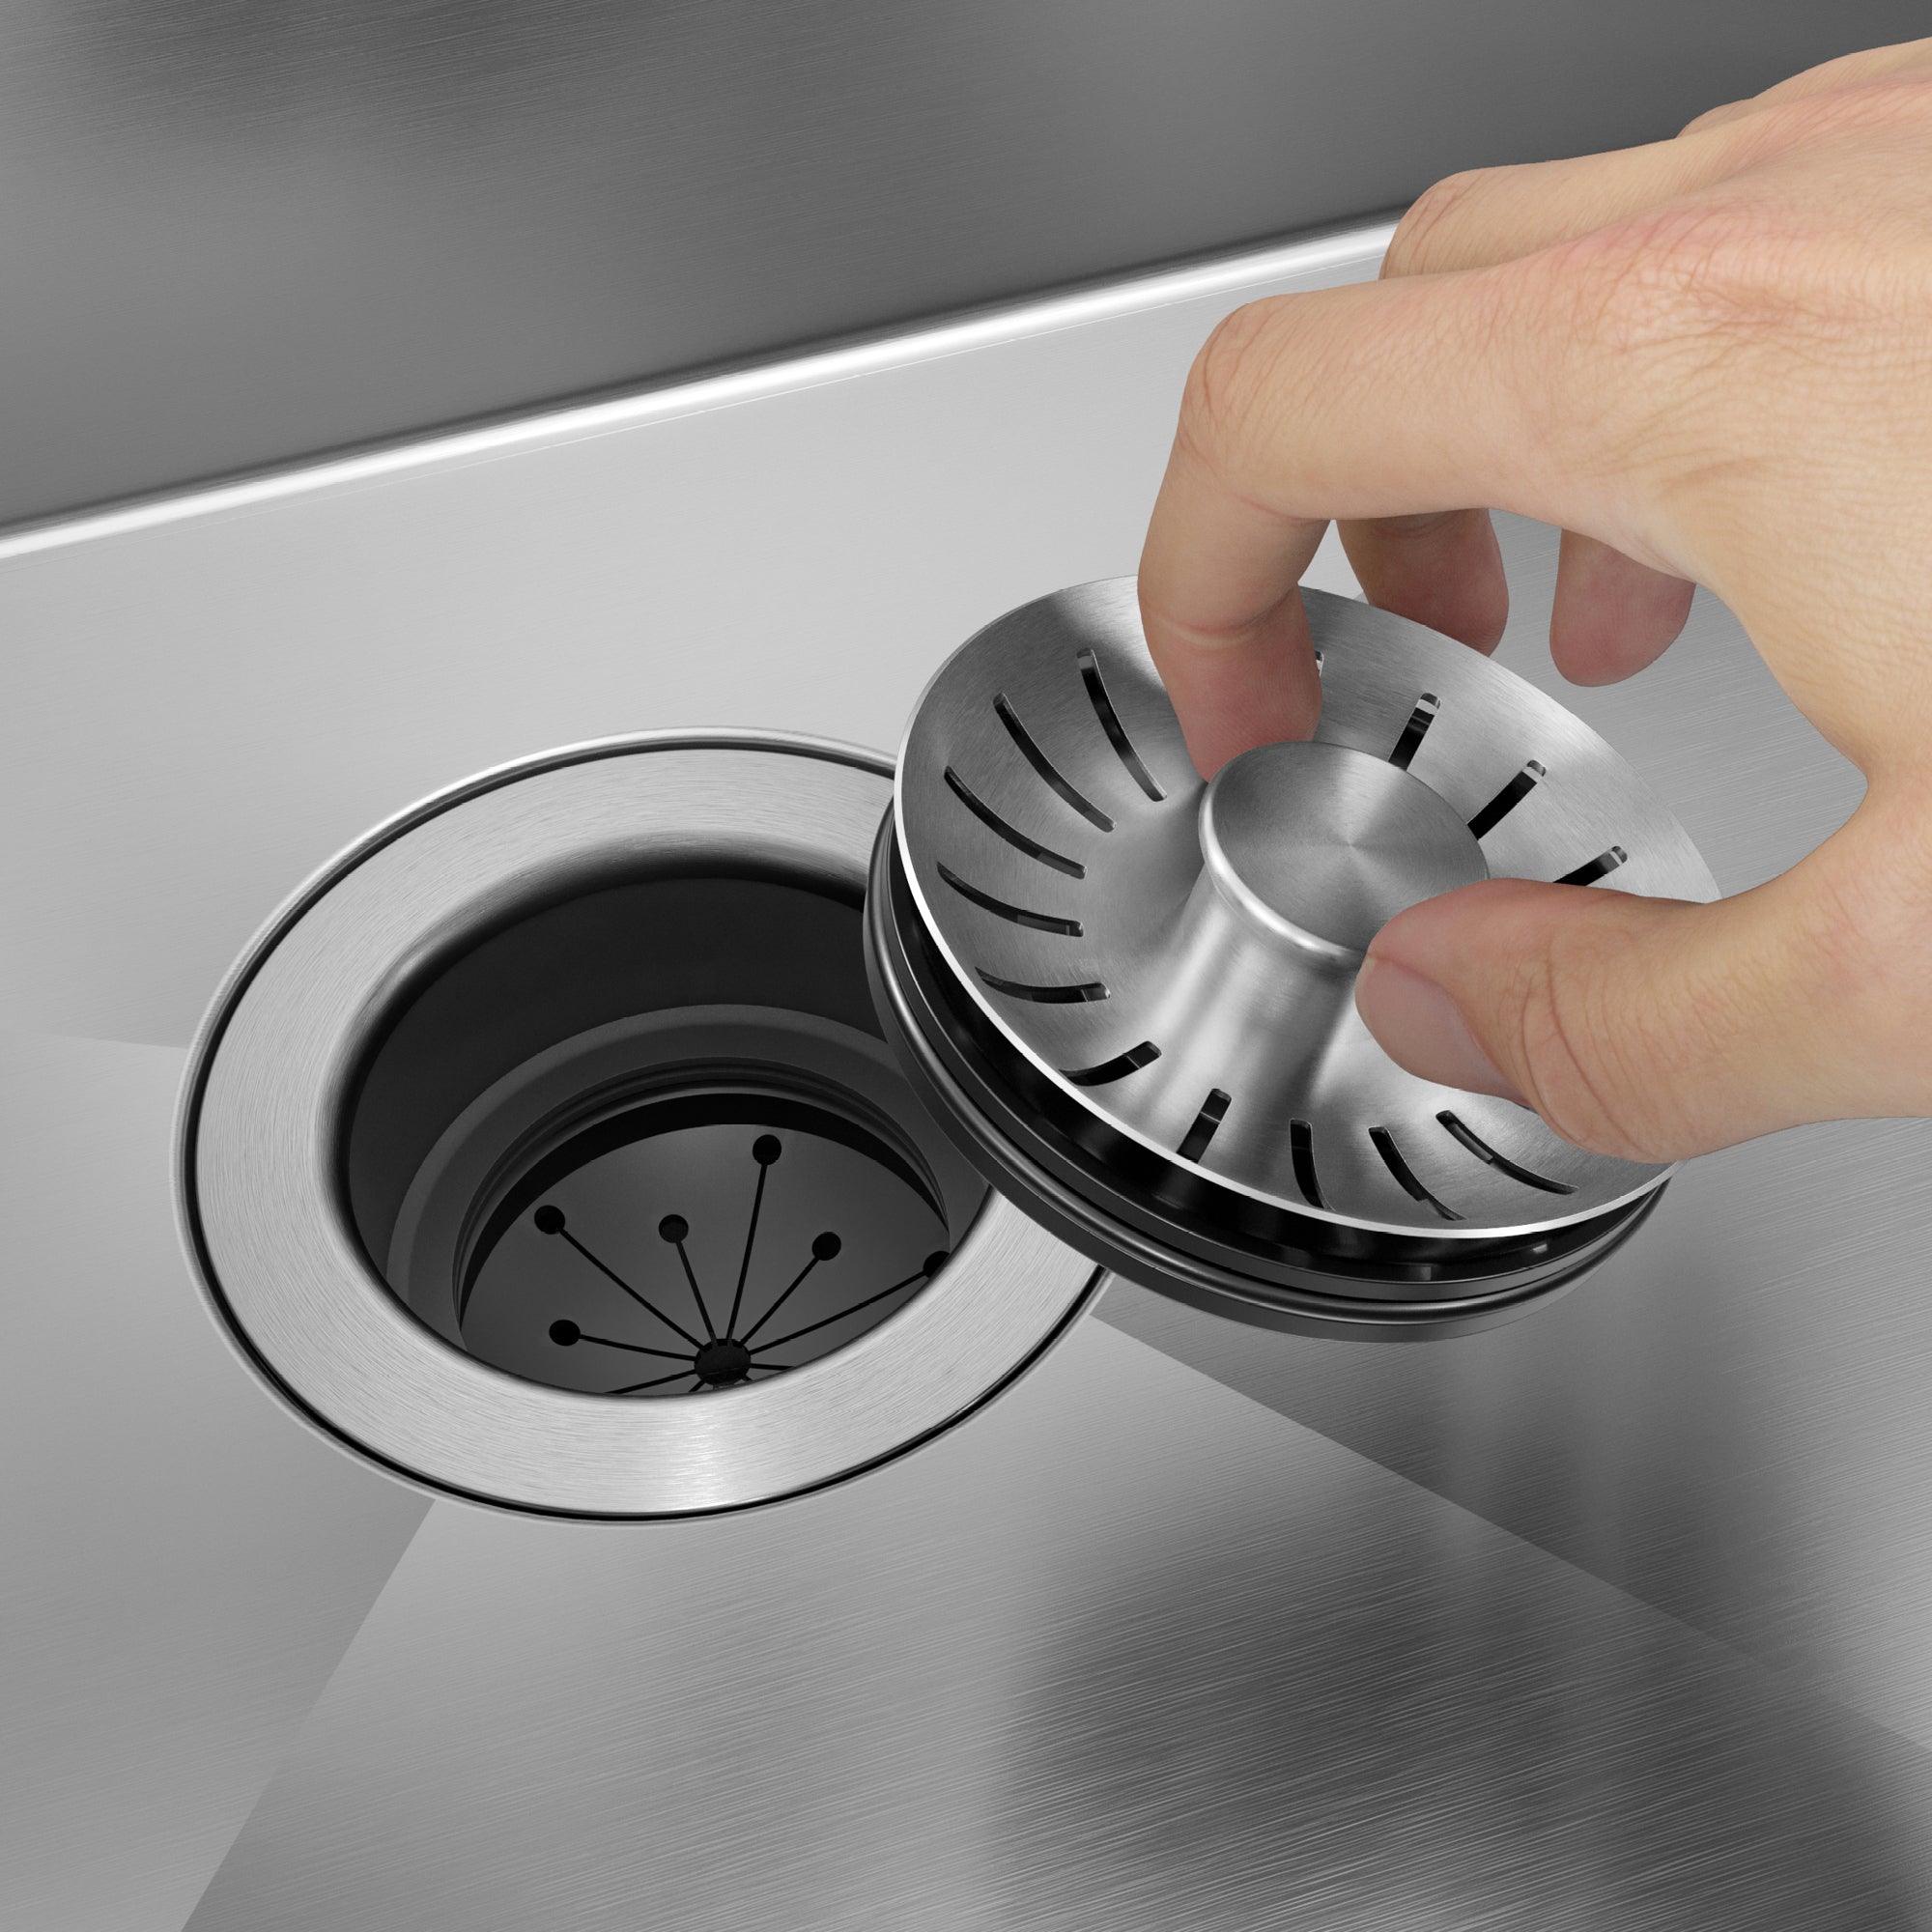 KRAUS Universal Kitchen Sink Strainer Stopper for Garbage Disposals